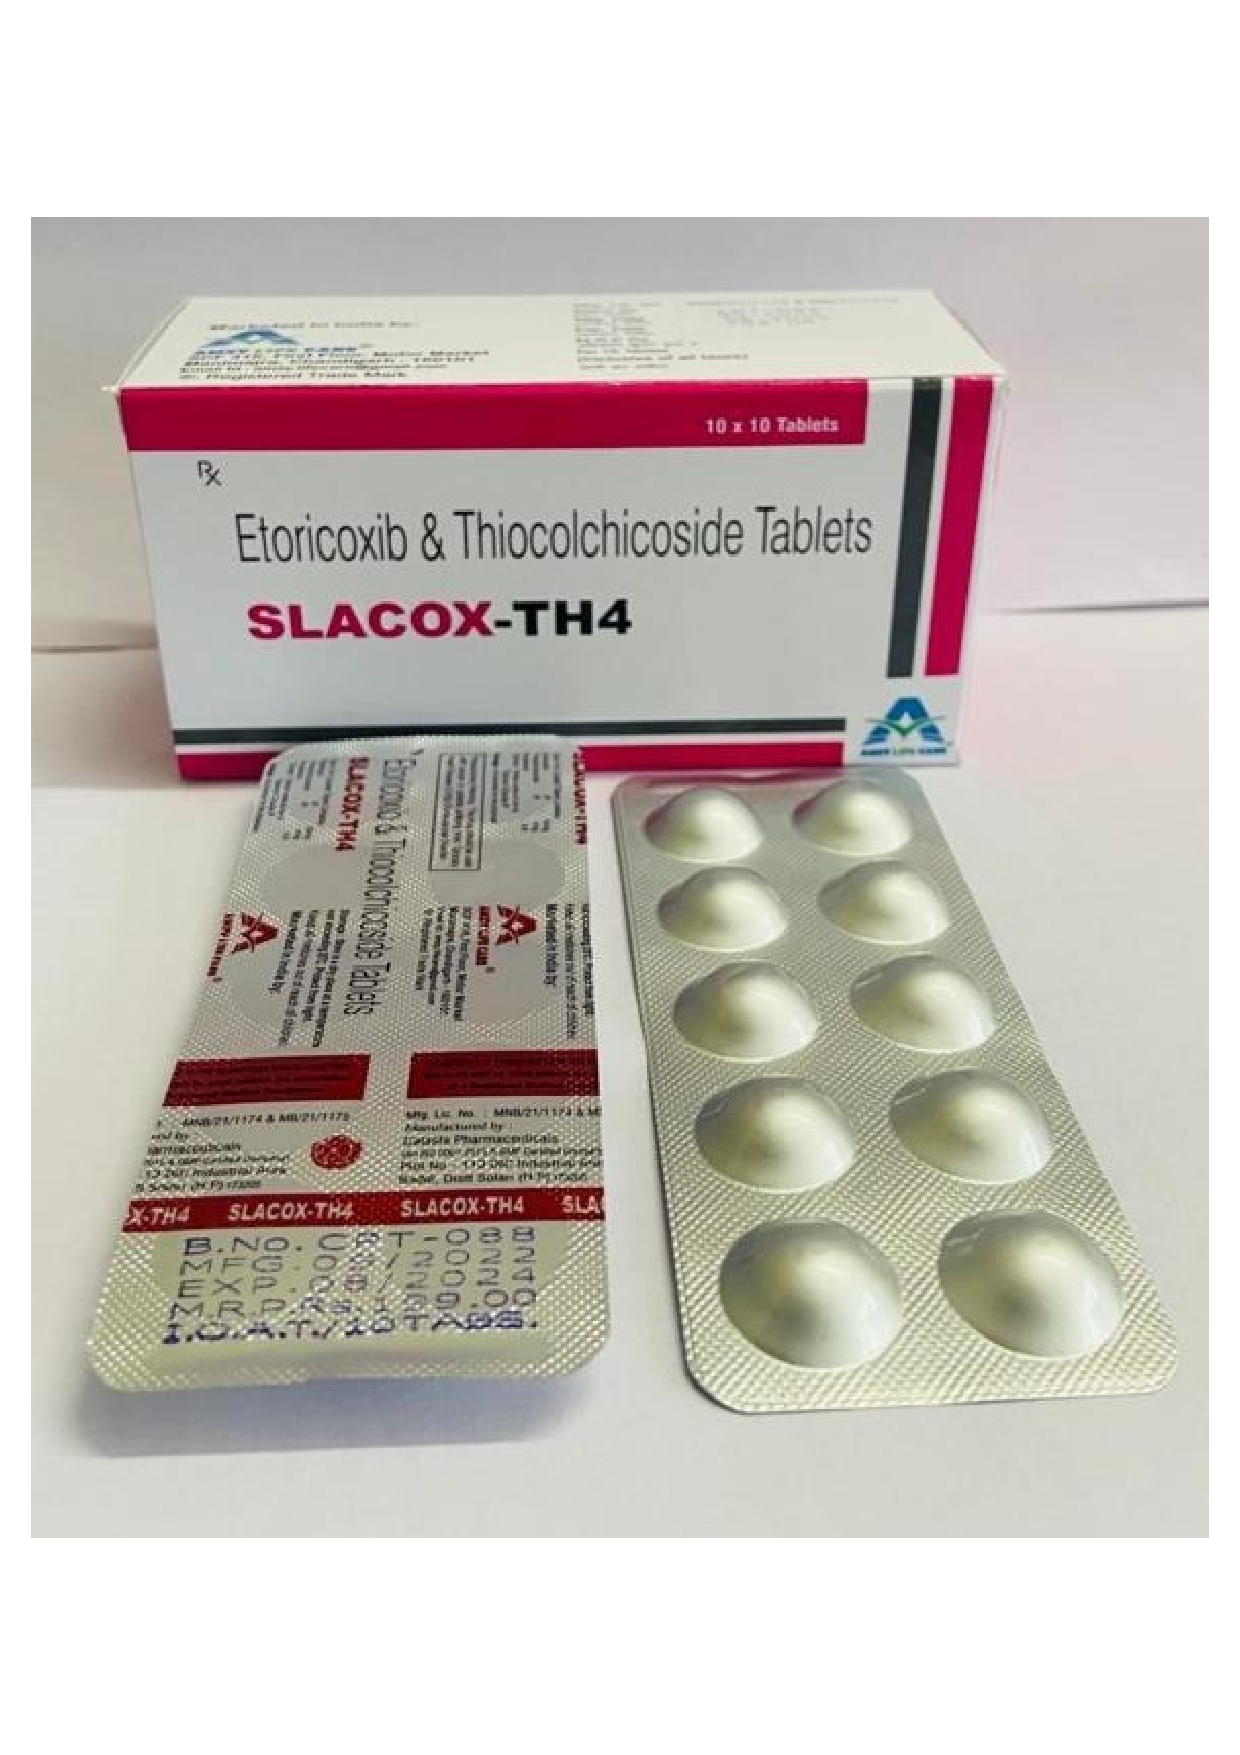 etoricoxib 60mg + thiocolchicolside 4mg tab